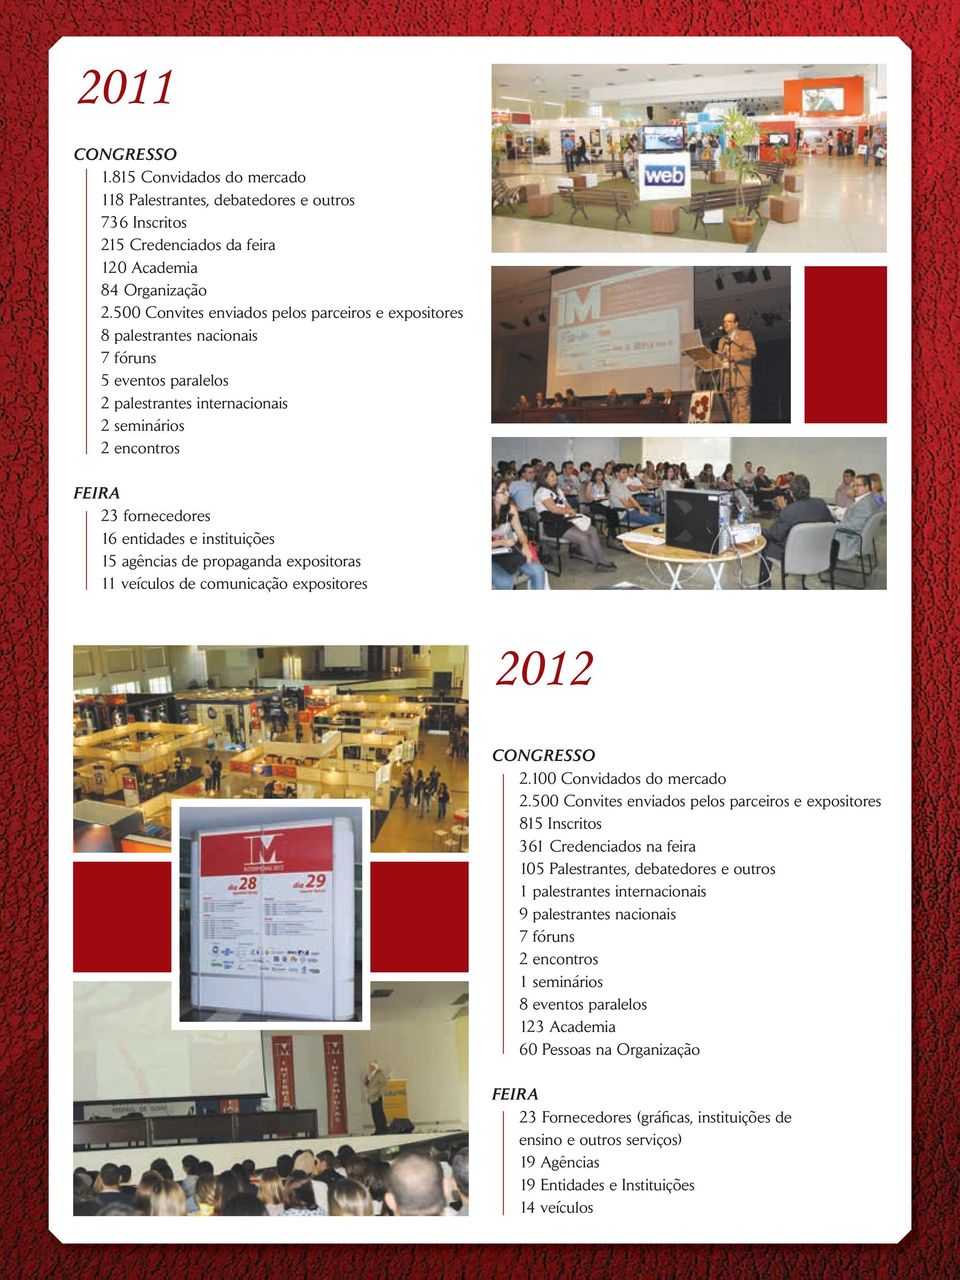 instituições 15 agências de propaganda expositoras 11 veículos de comunicação expositores 2012 CONGRESSO 2.100 Convidados do mercado 2.